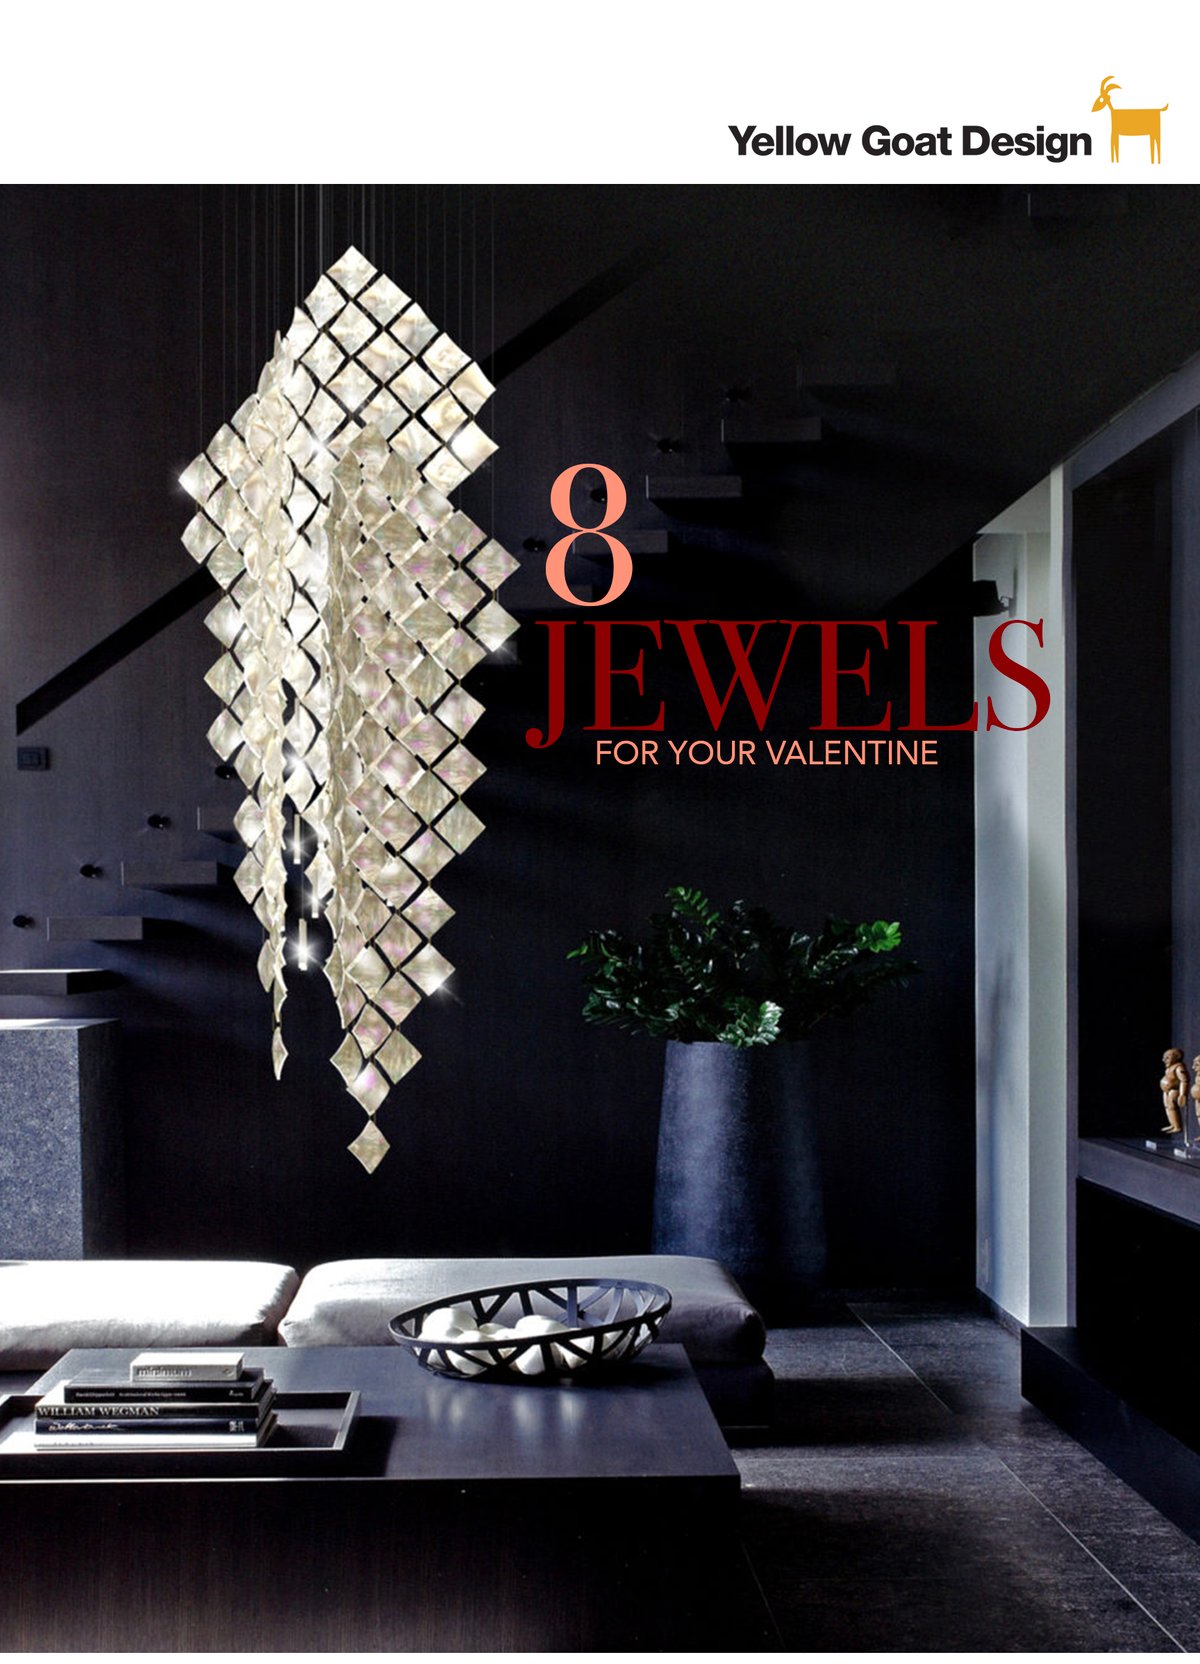 Jewels 1 top_R5